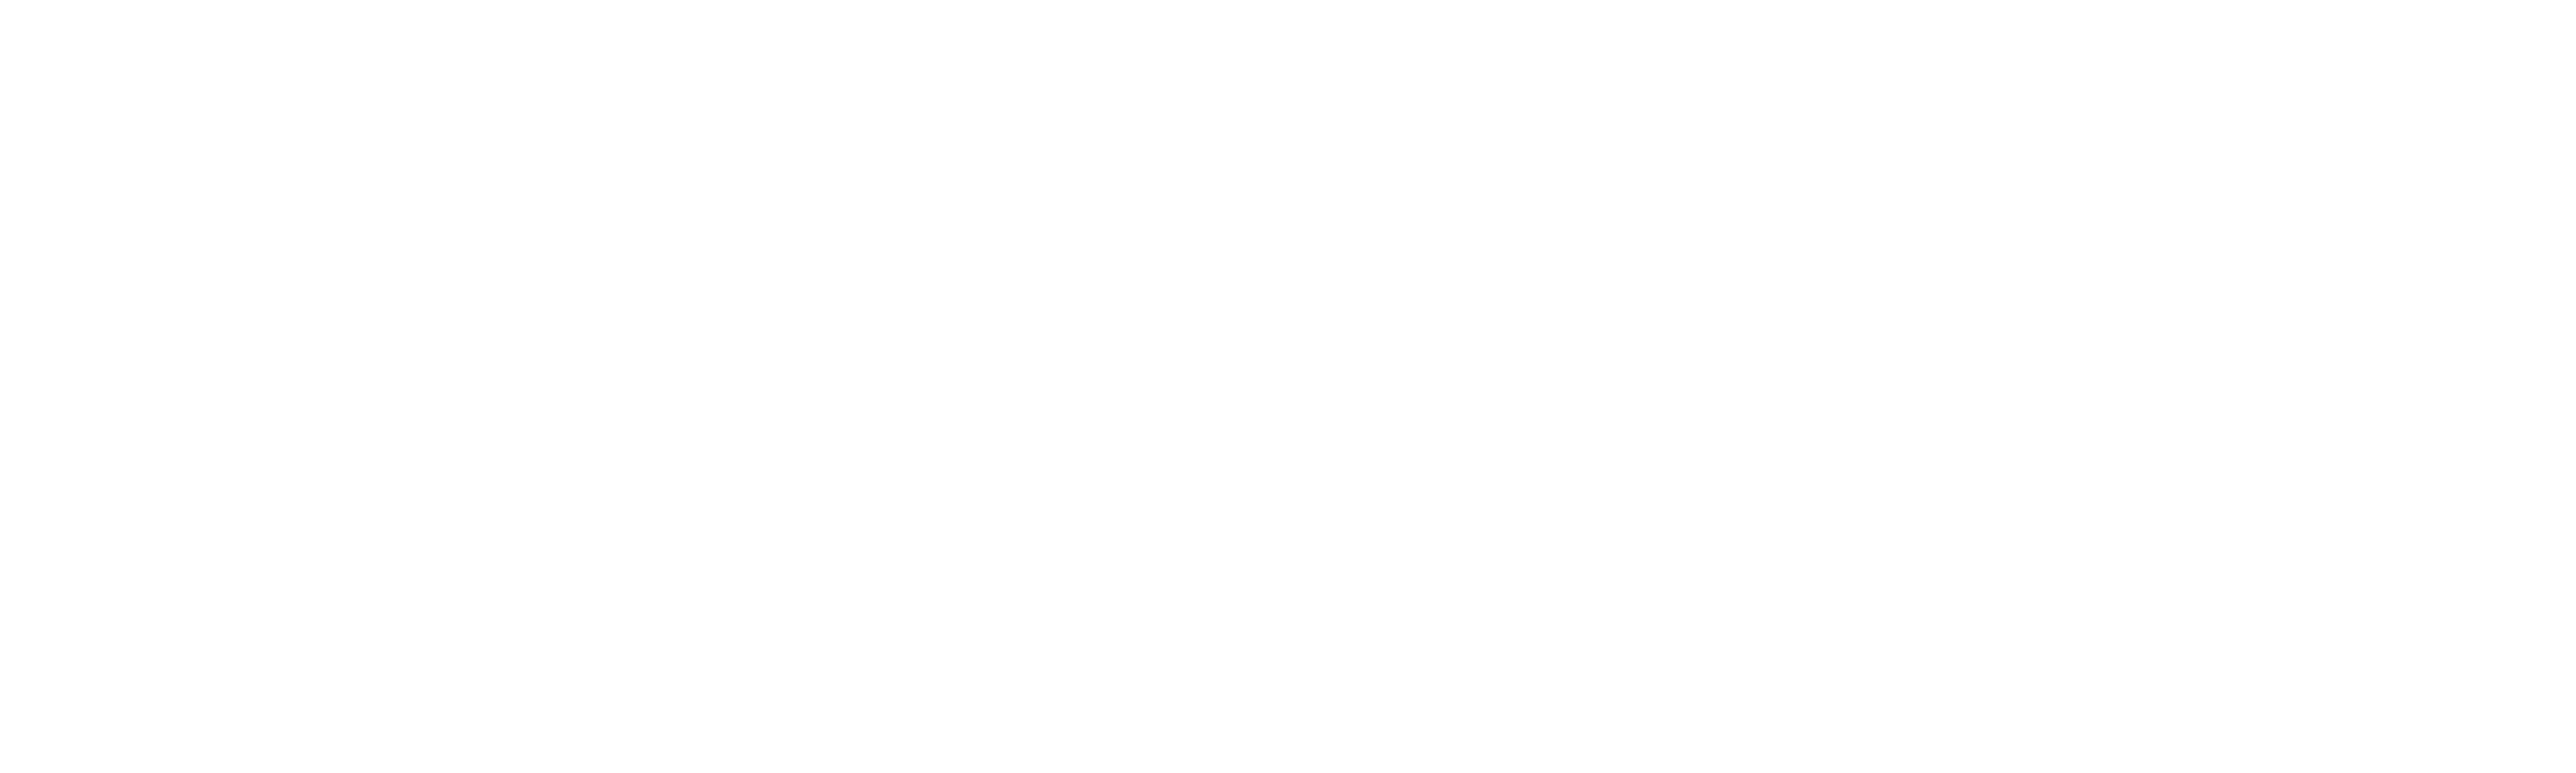 Aspiria Logo